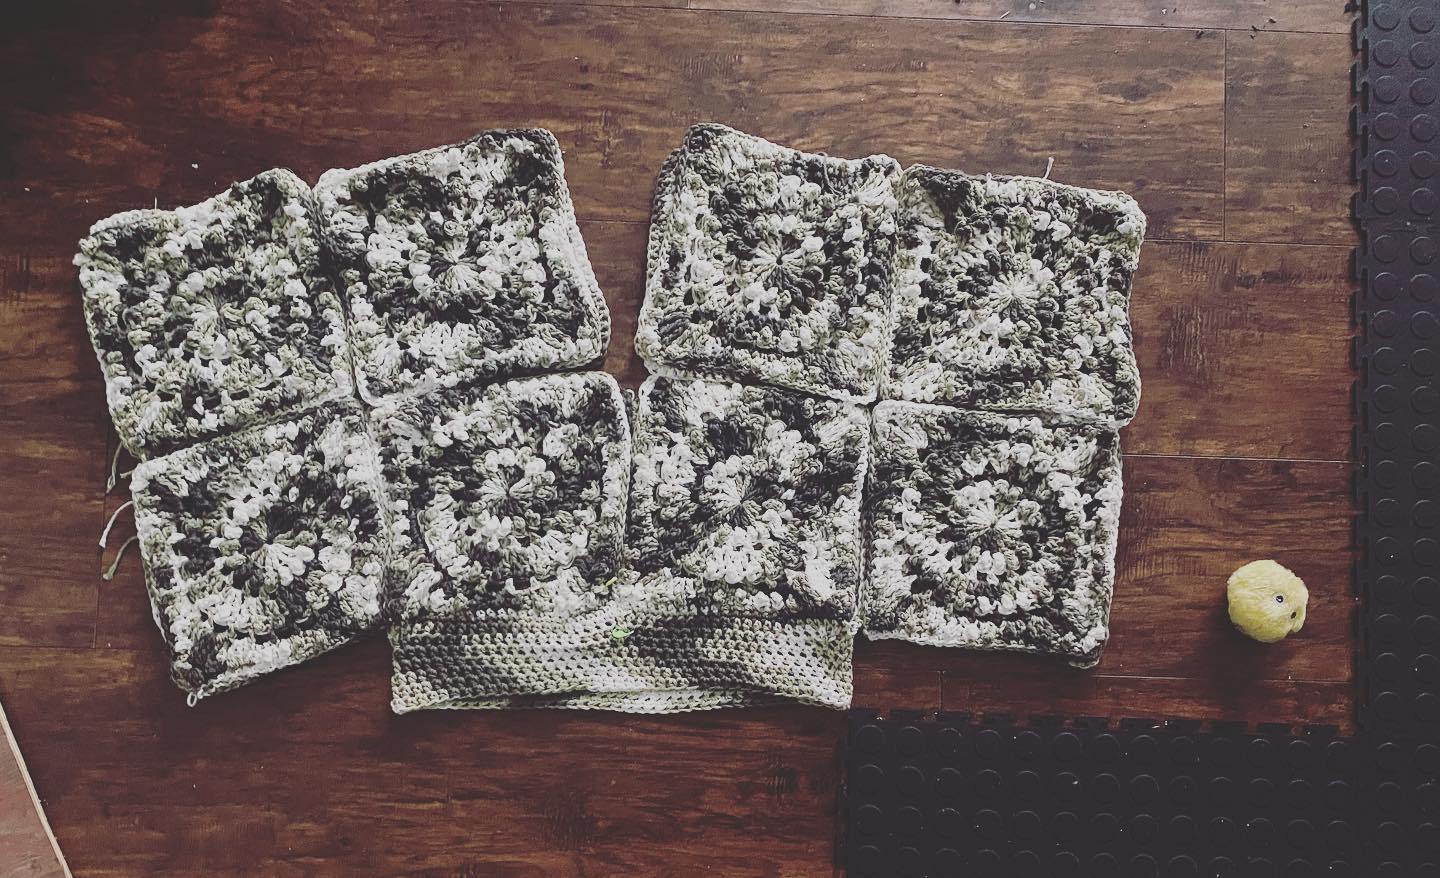 #workinprogress #crochetshirt #circleoffriends #homemade #bettyboobs